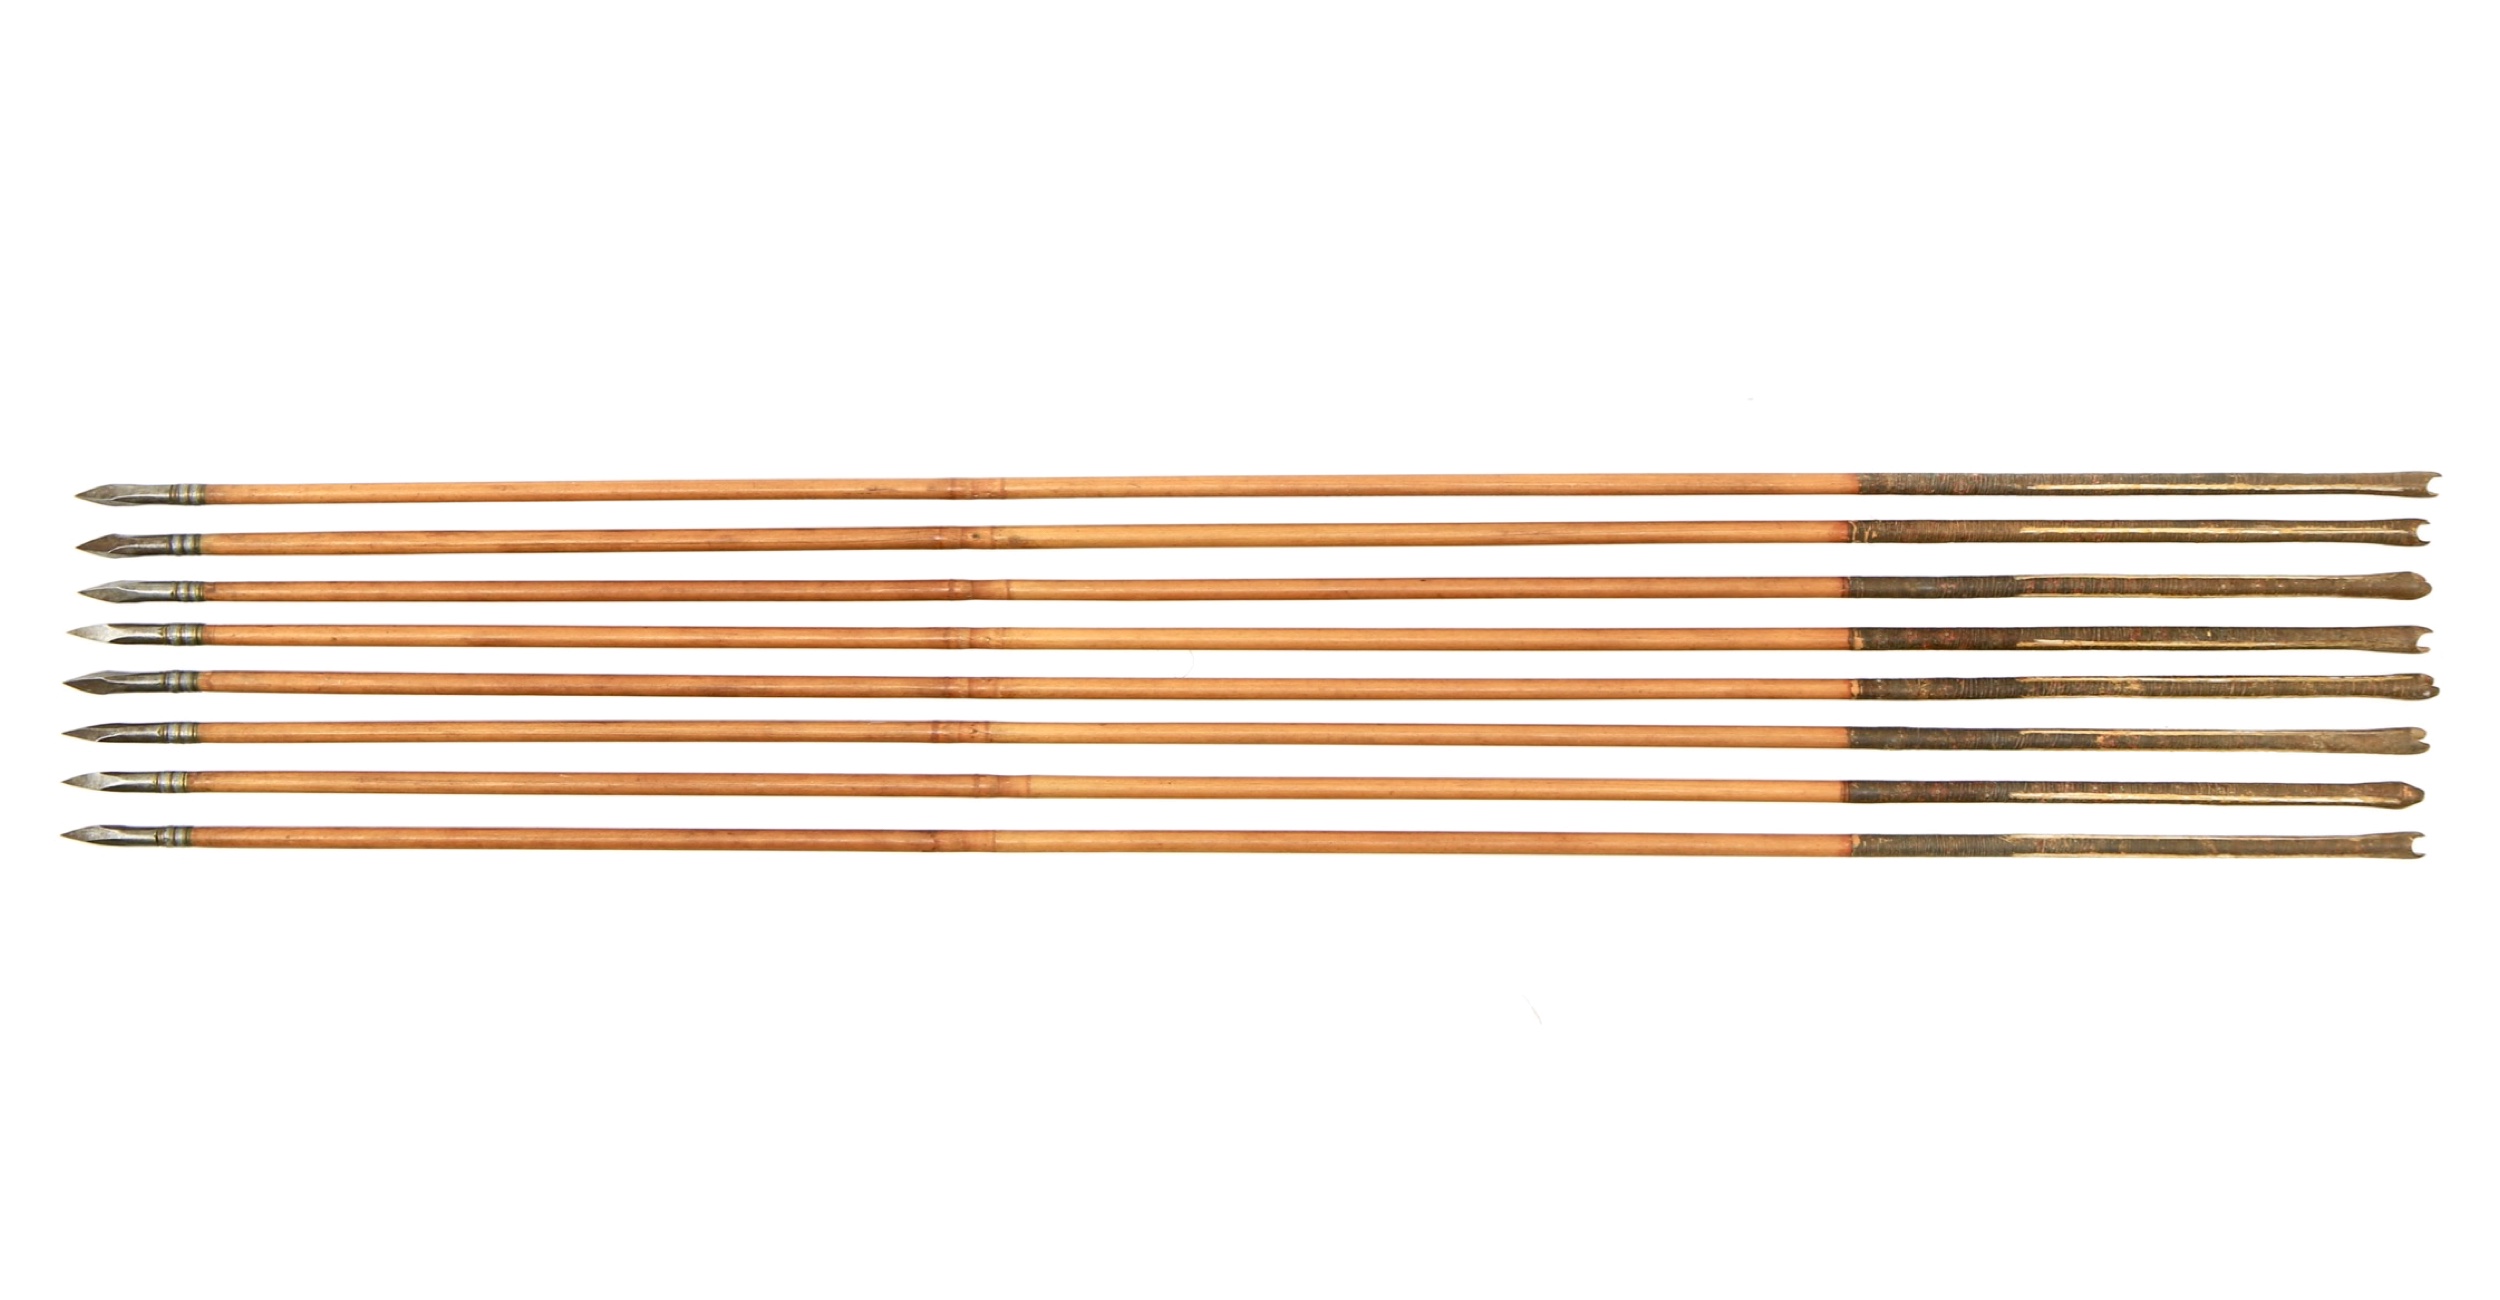 Indian bodkin arrows